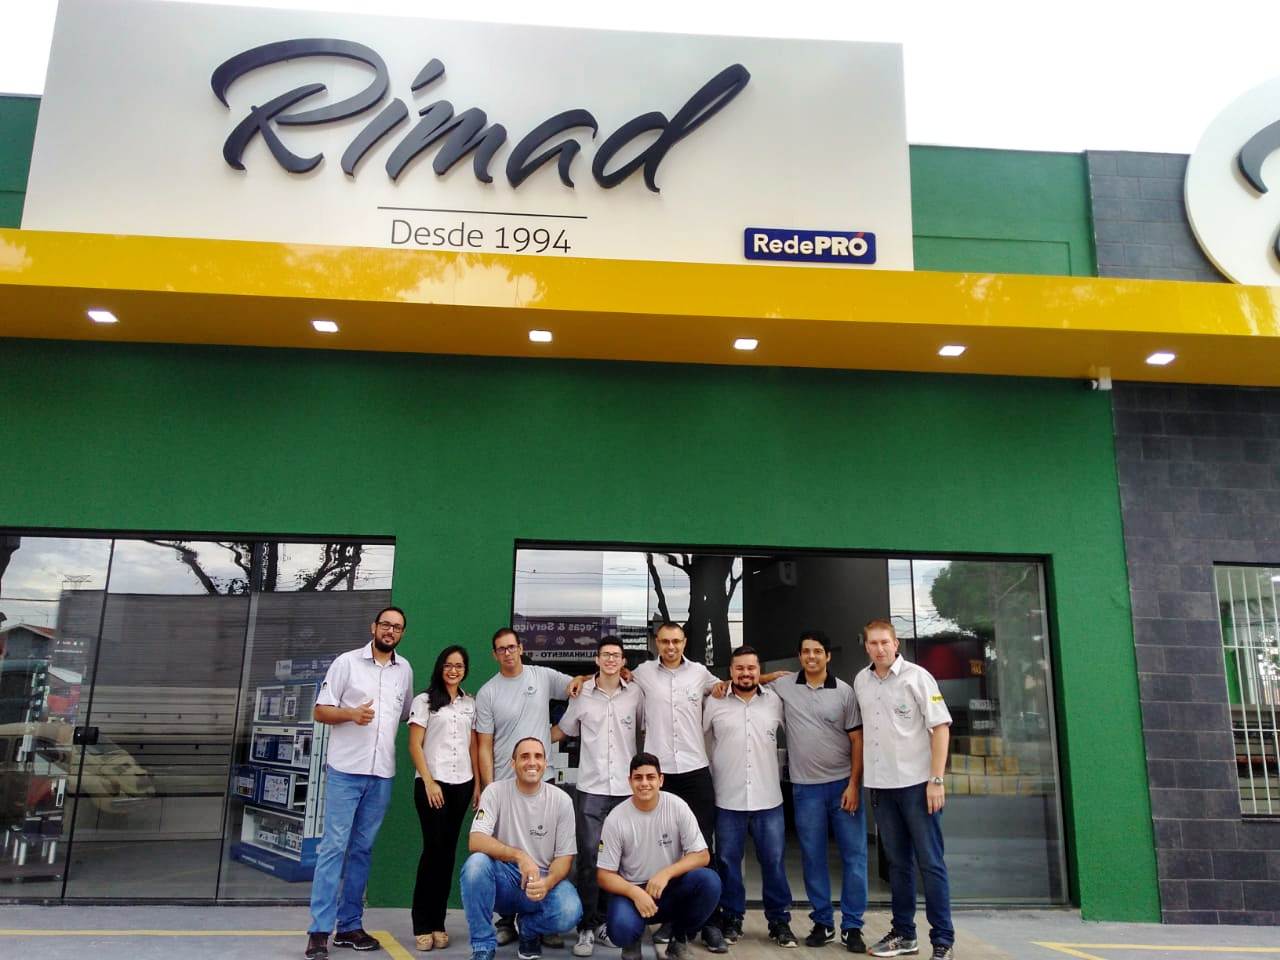 Revenda Rimad - Rede Pró